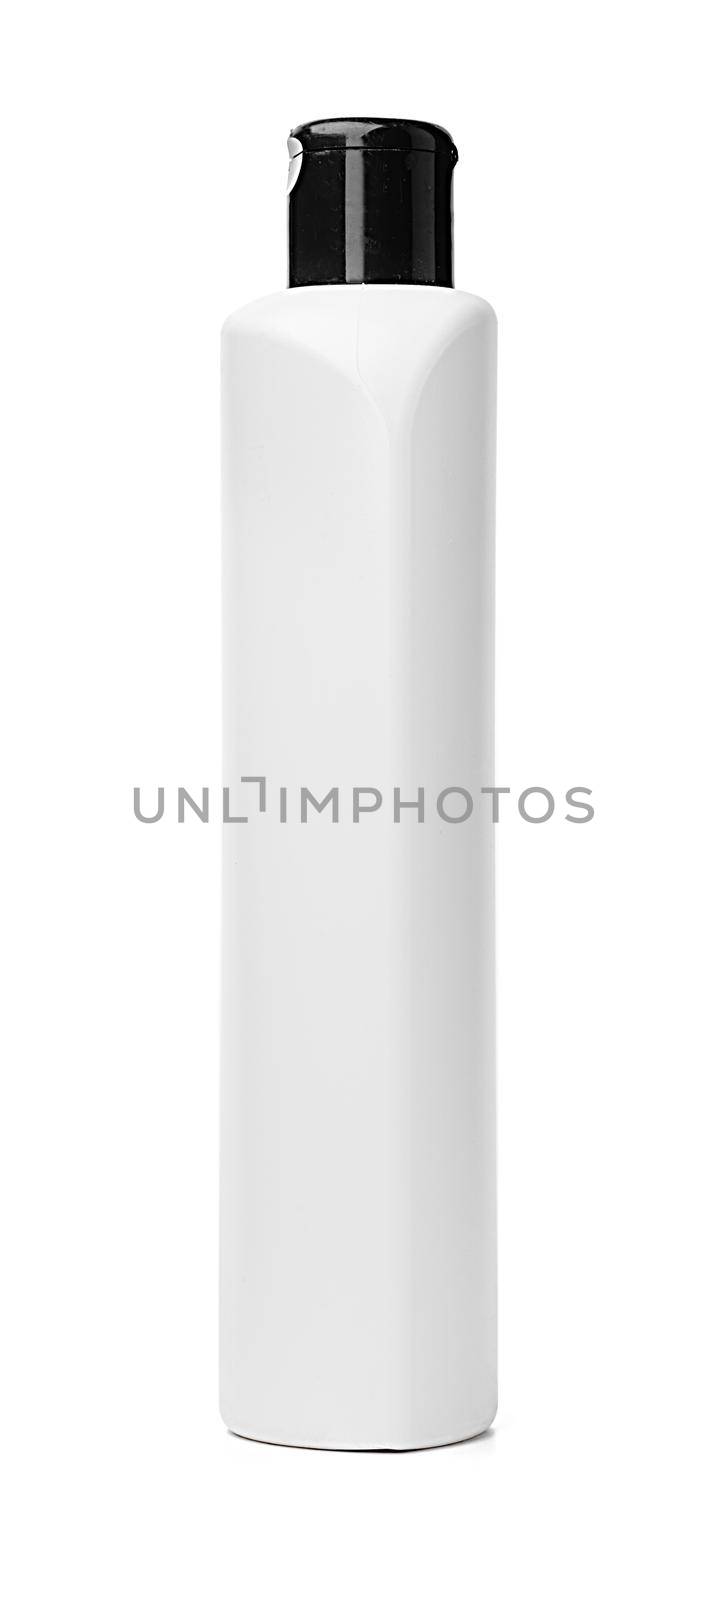 White plastic bottle of washing liquid isolated on white background, close up